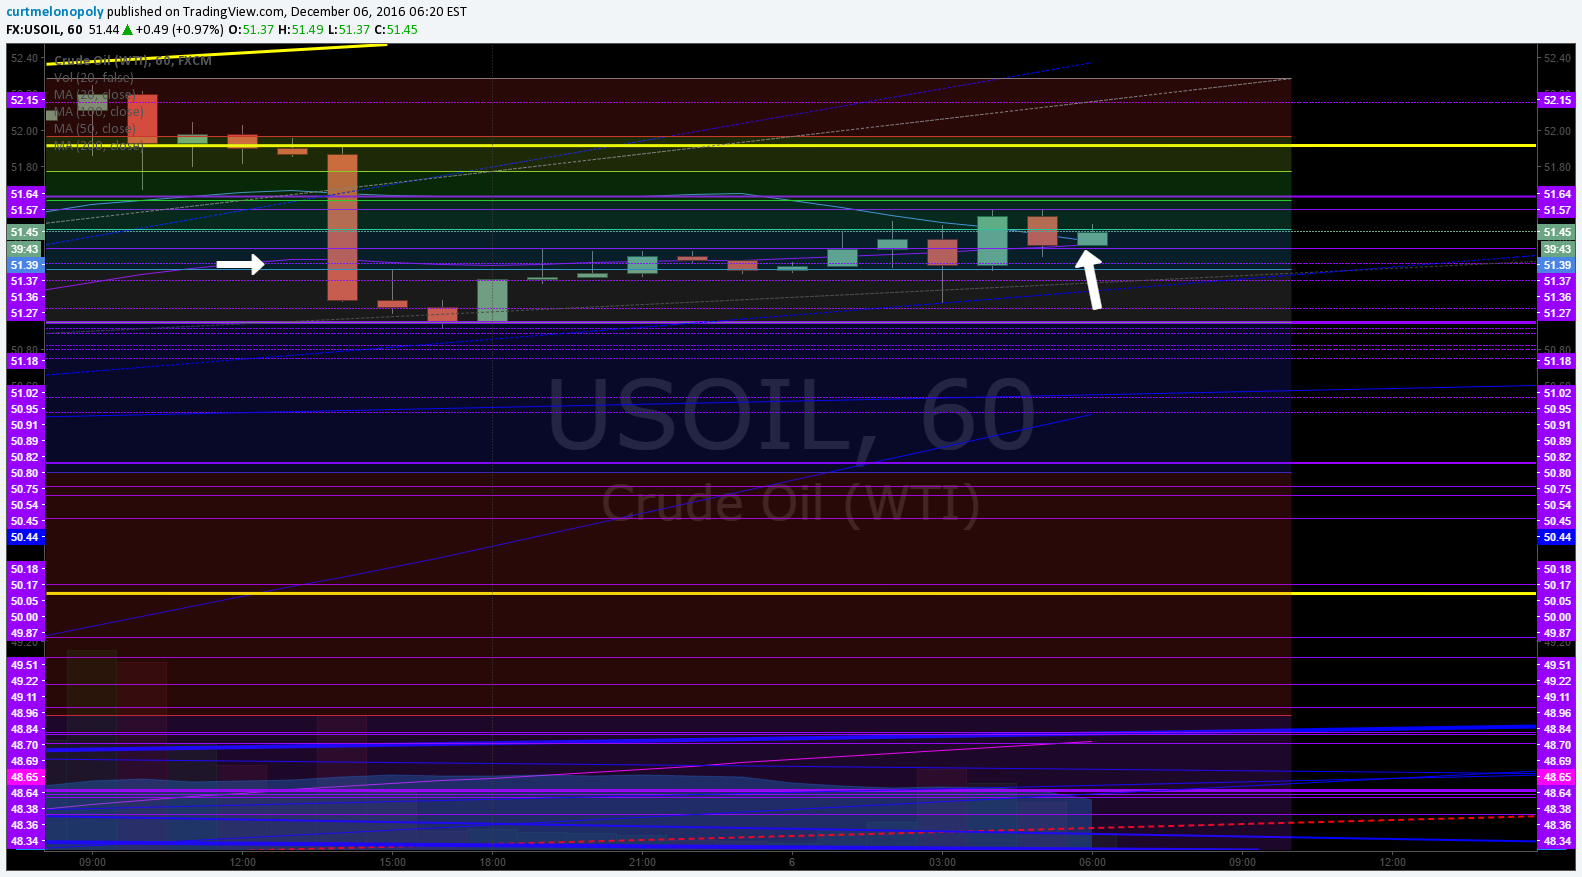 Crude Oil, 200 MA